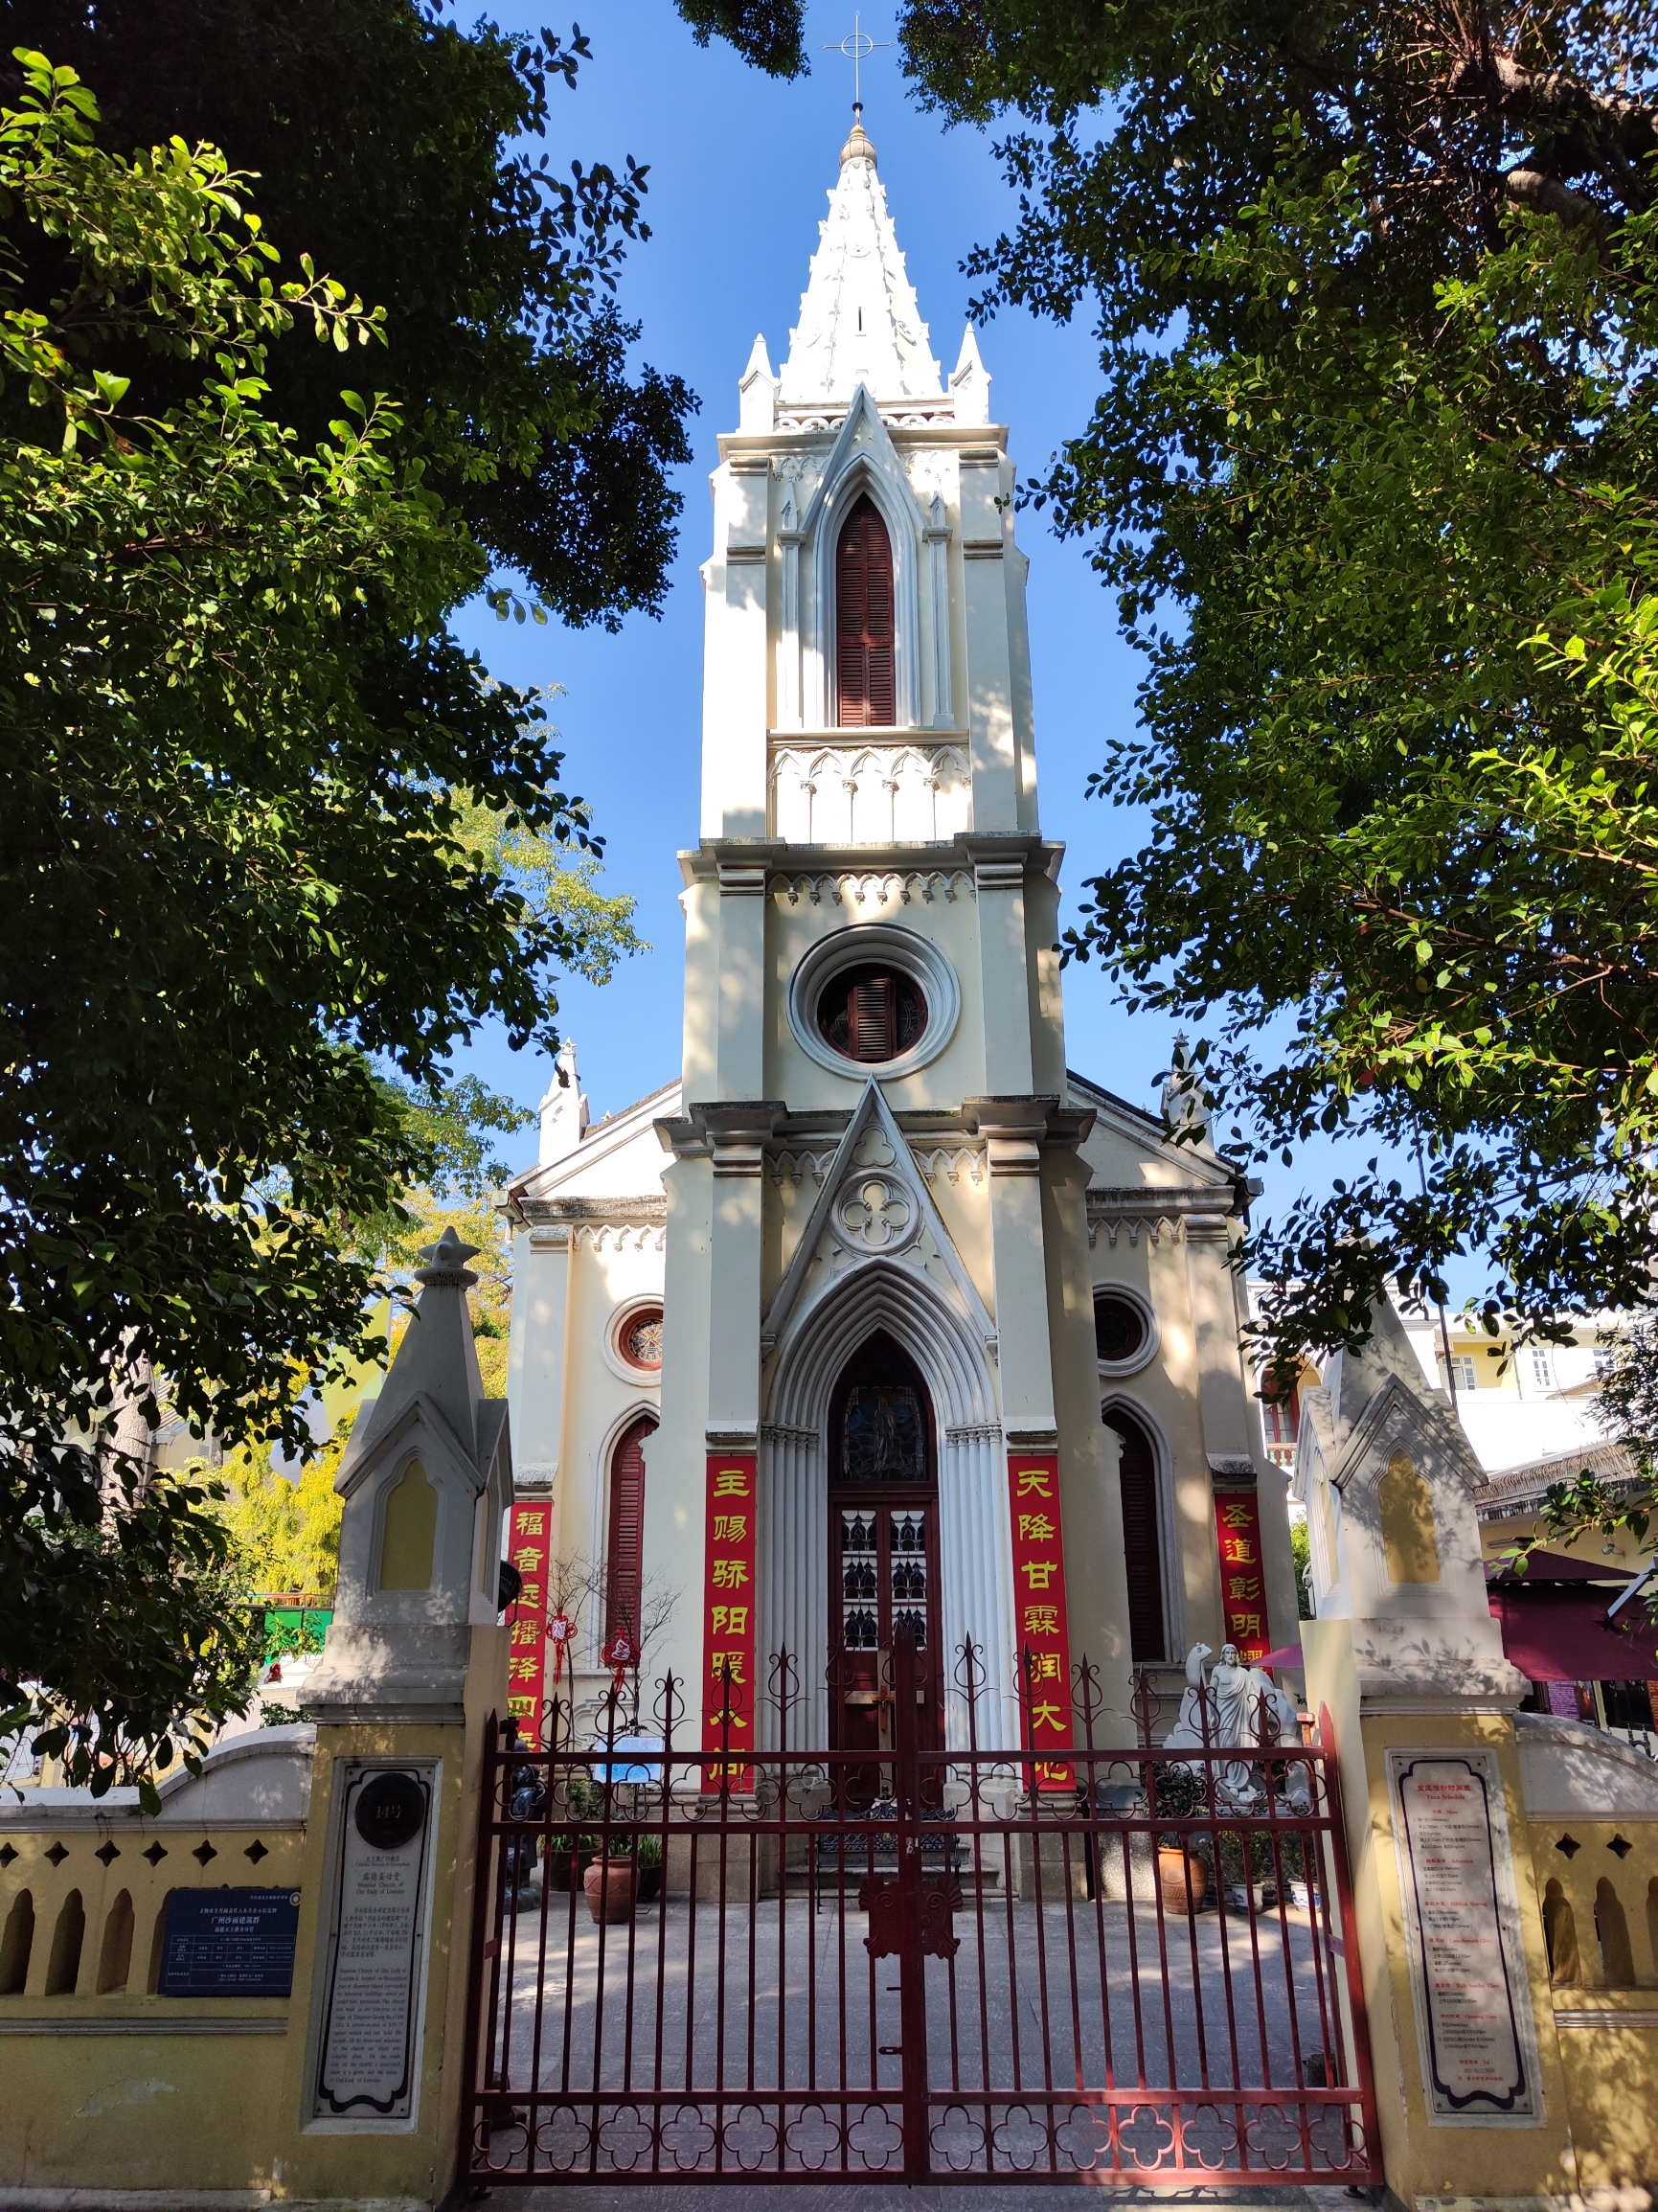 露德圣母堂，是广州市荔湾区沙面小岛上的一座天主教堂，在广州市有两座天主教堂，一座是位于一德路上的圣心